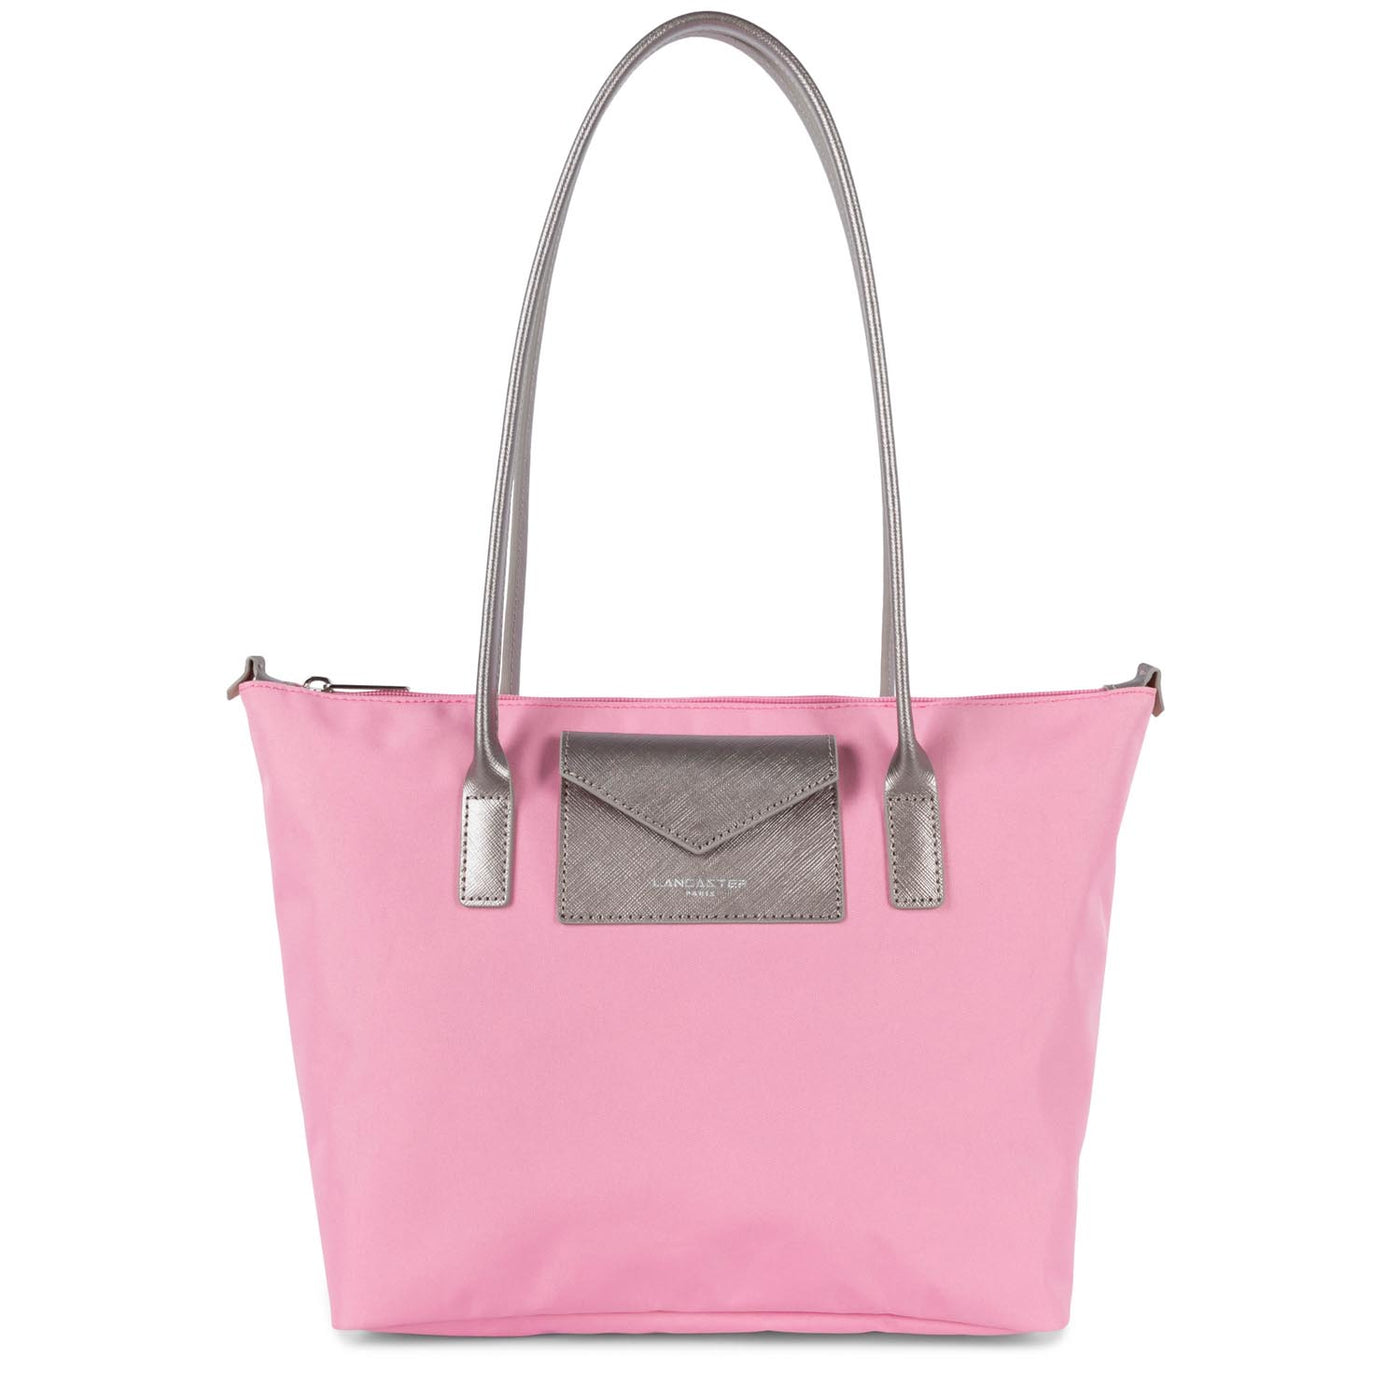 sac cabas épaule - smart kba #couleur_rose